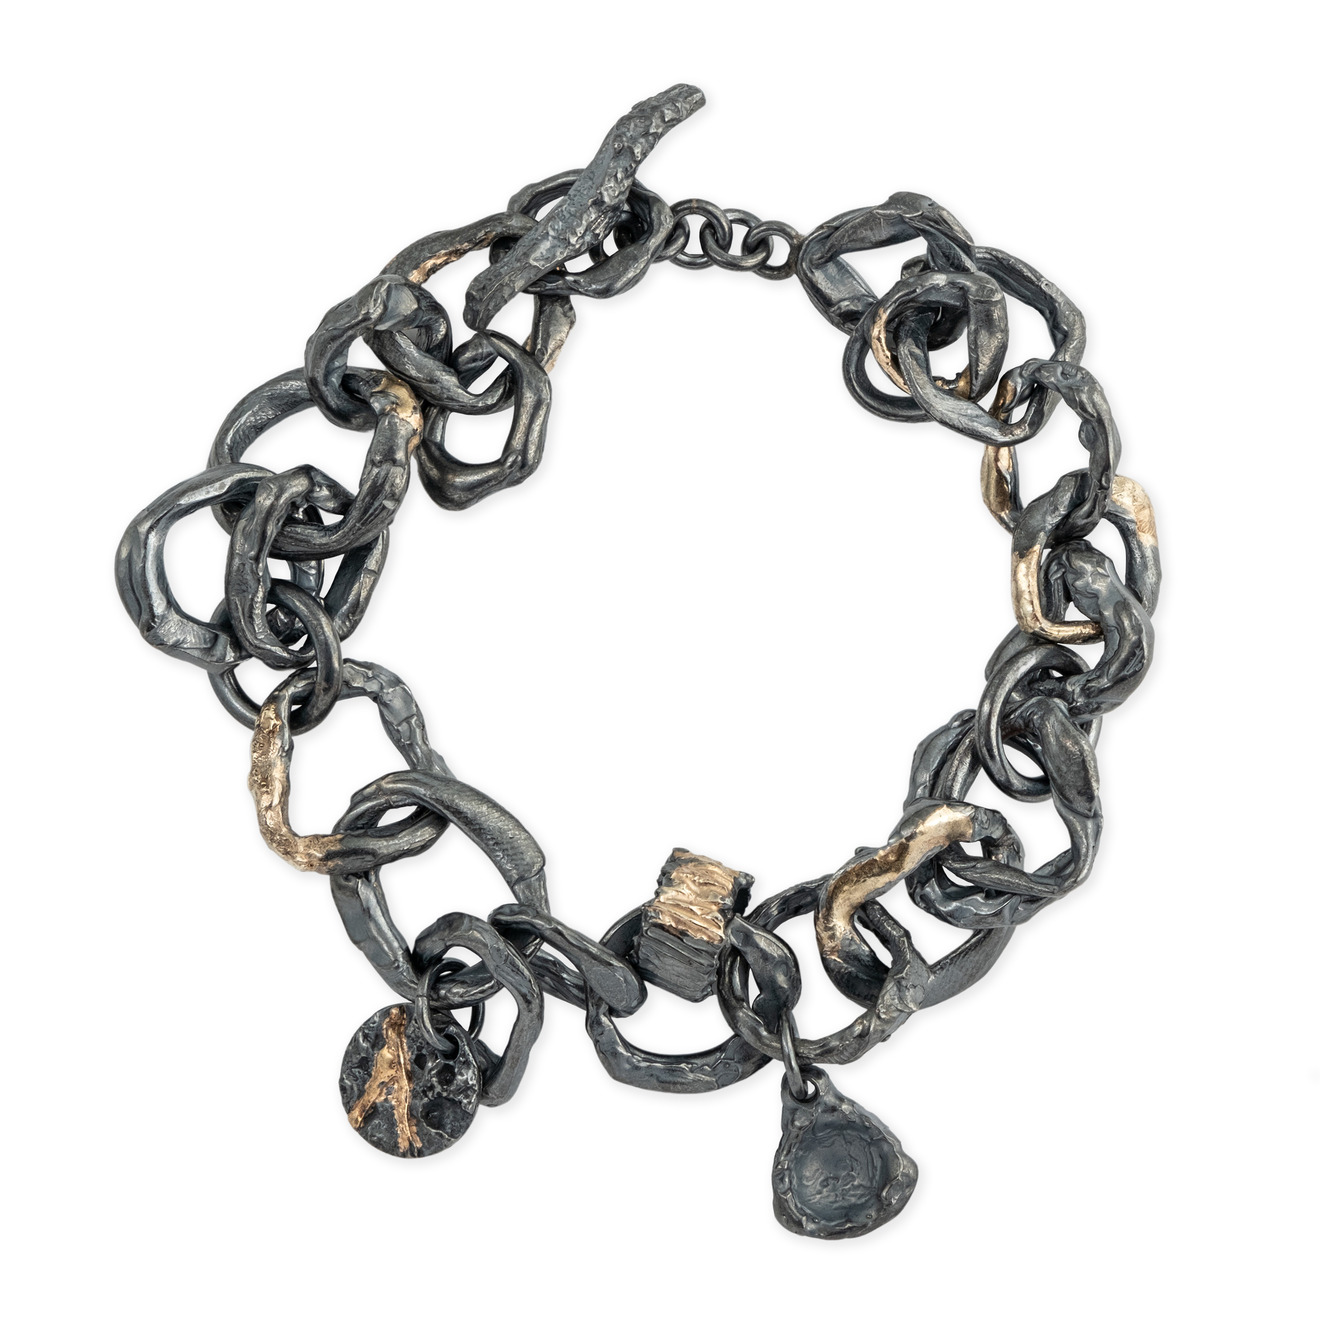 Kintsugi Jewelry Позолоченый браслет из черненого серебра Wabi Sabi kintsugi jewelry позолоченные серьги из серебра wabi sabi